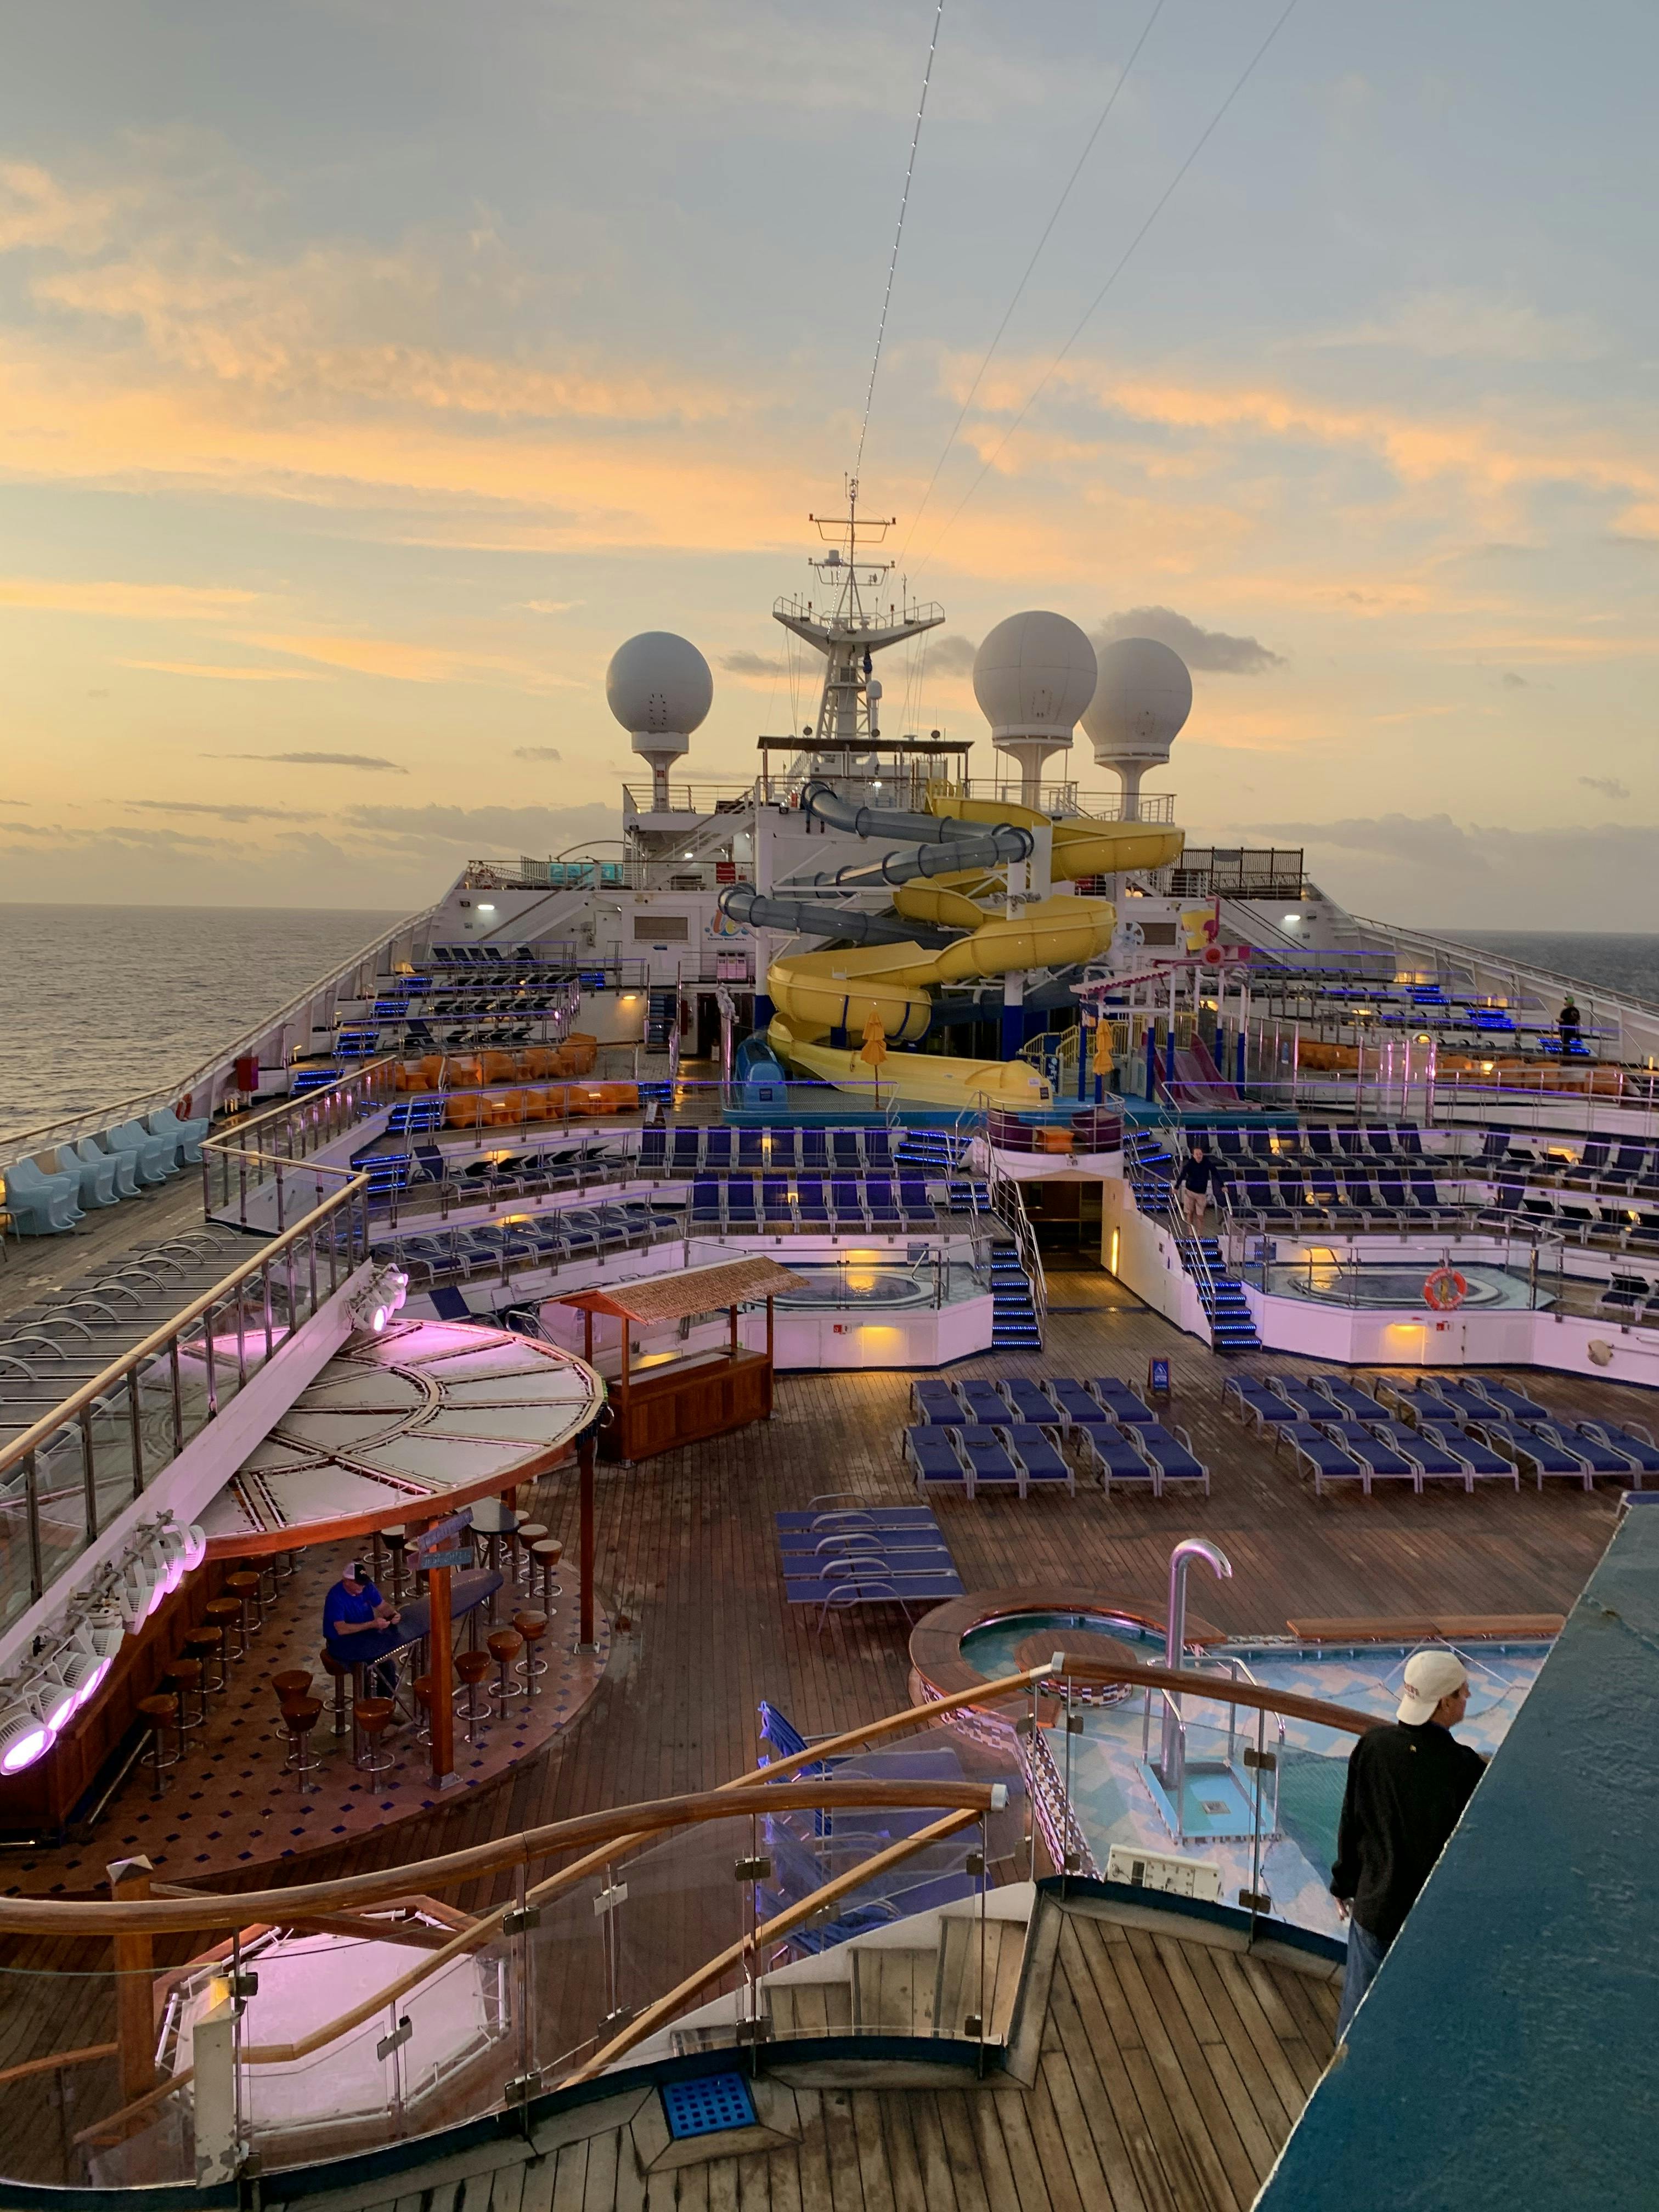 carnival cruise glory ship